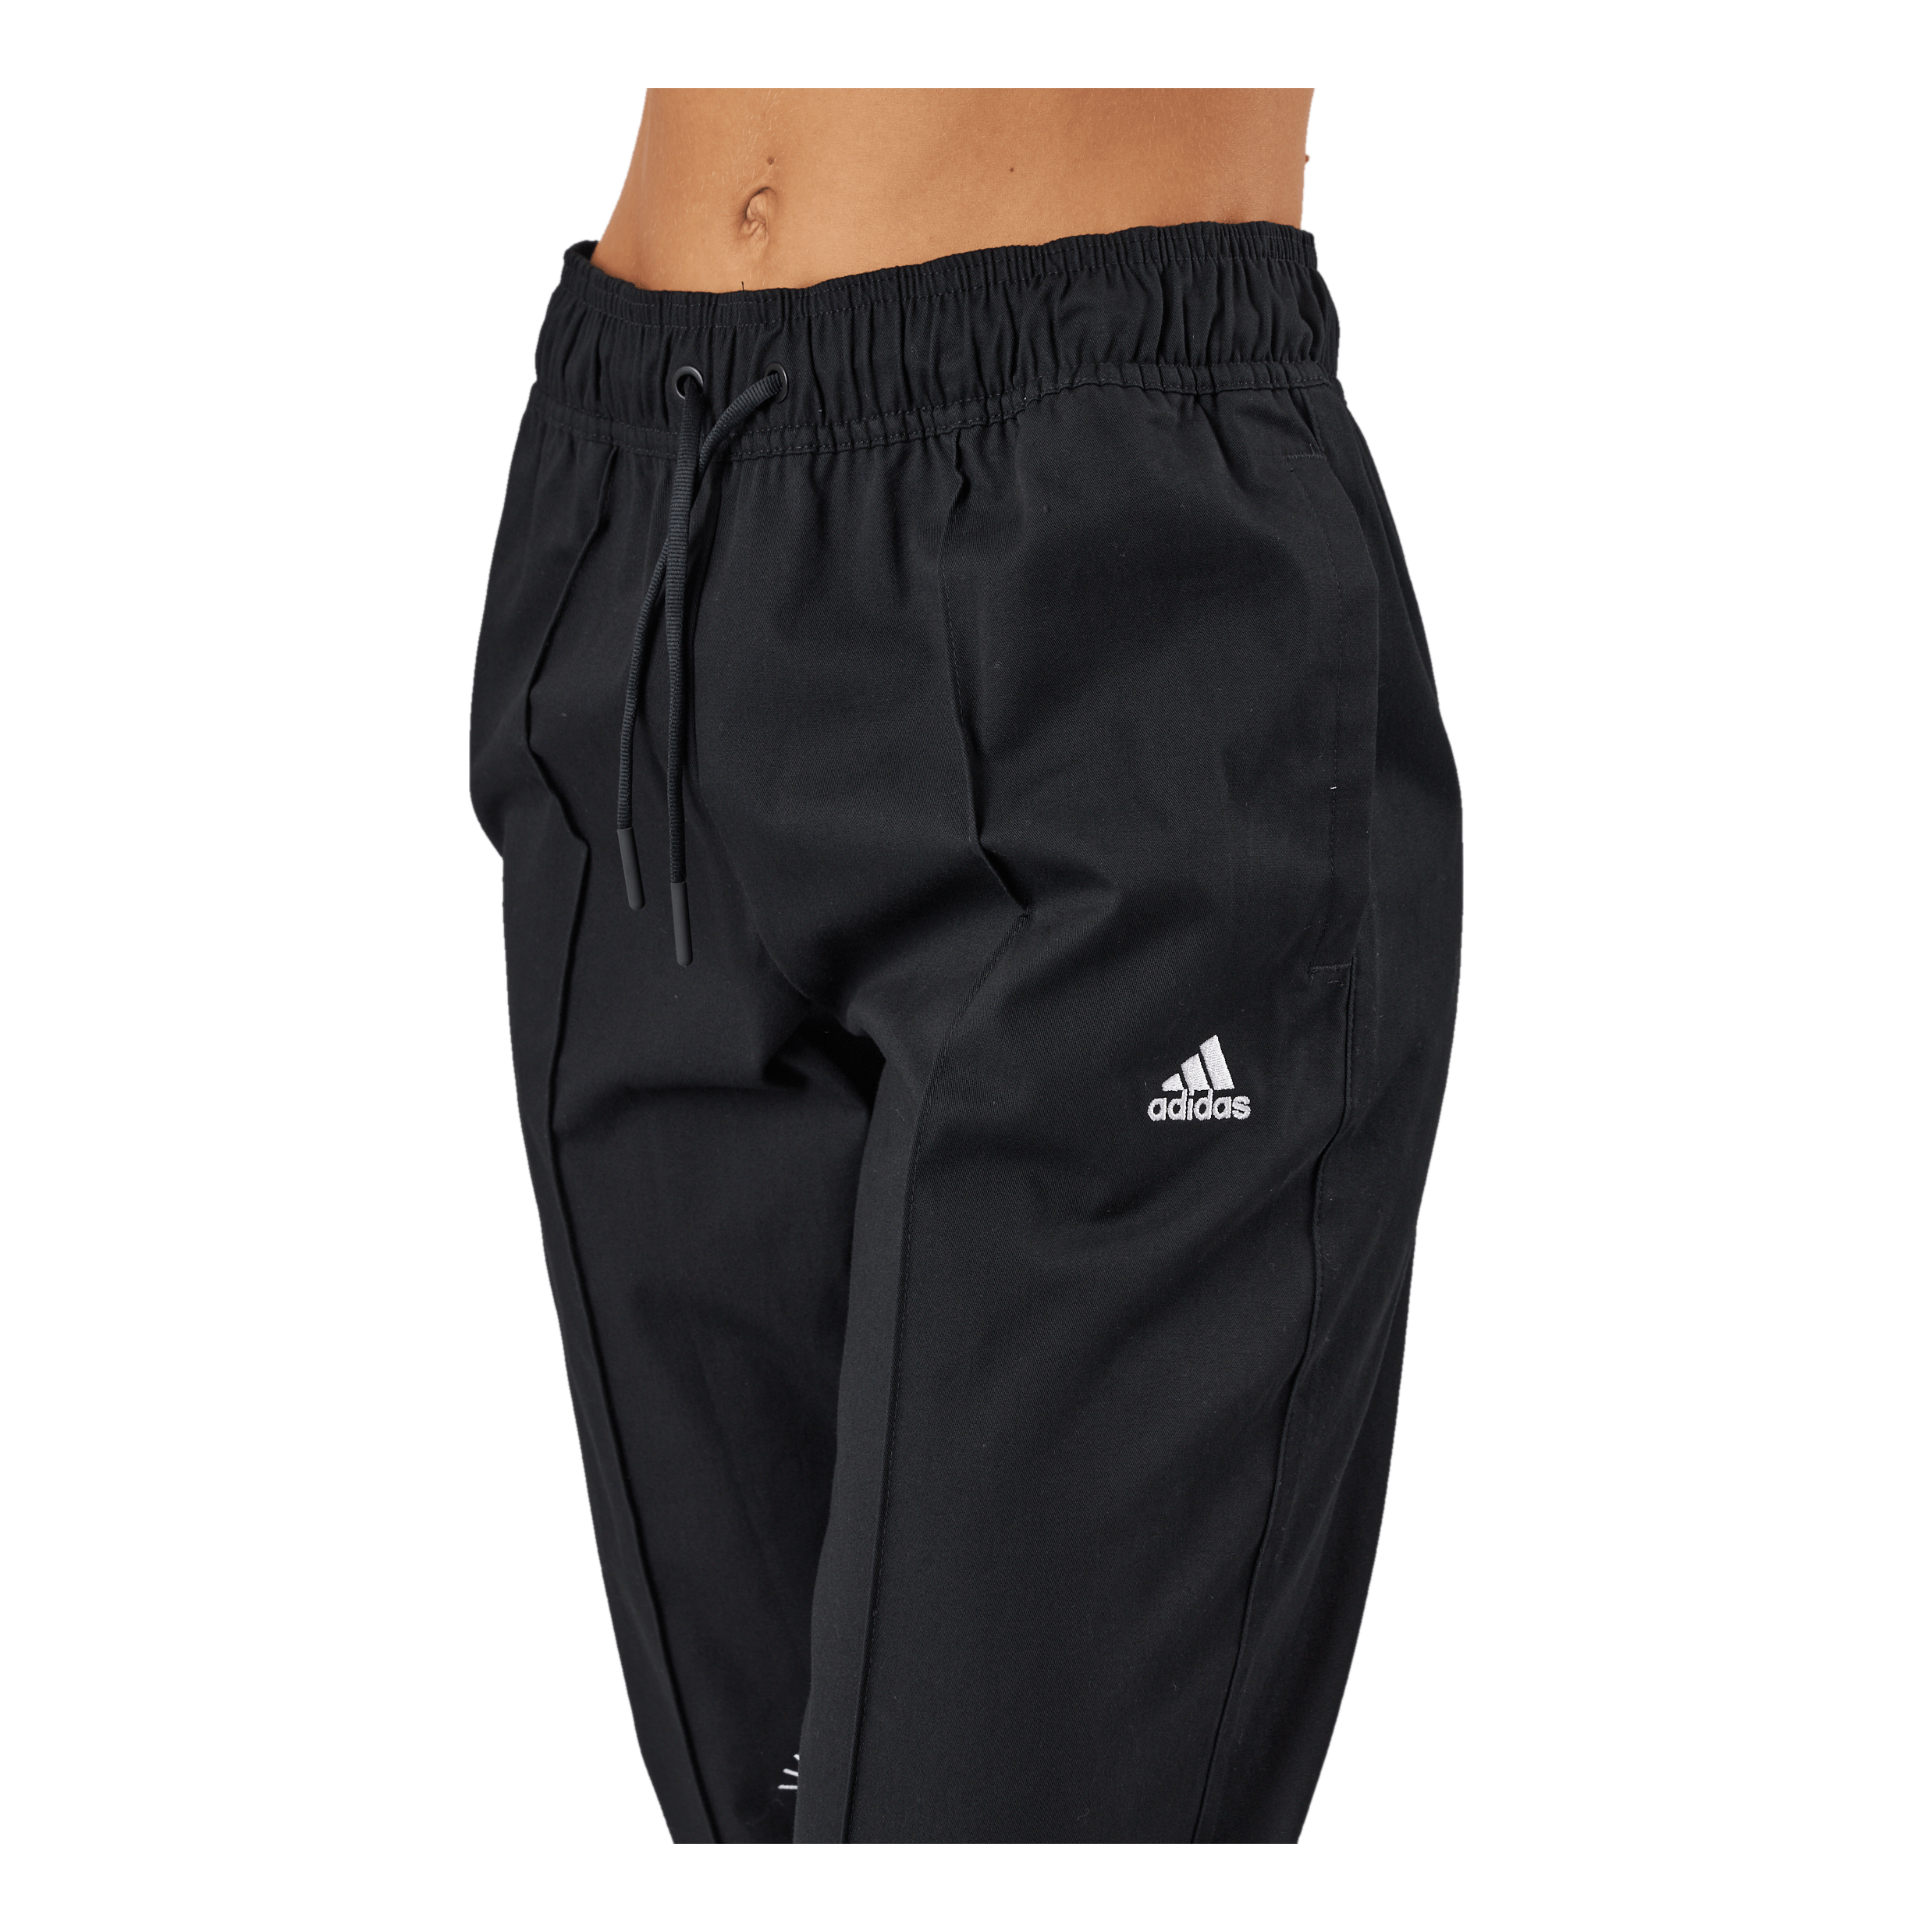 adidas Boys' Tiro 19 Training Pants Small Black/White - Walmart.com